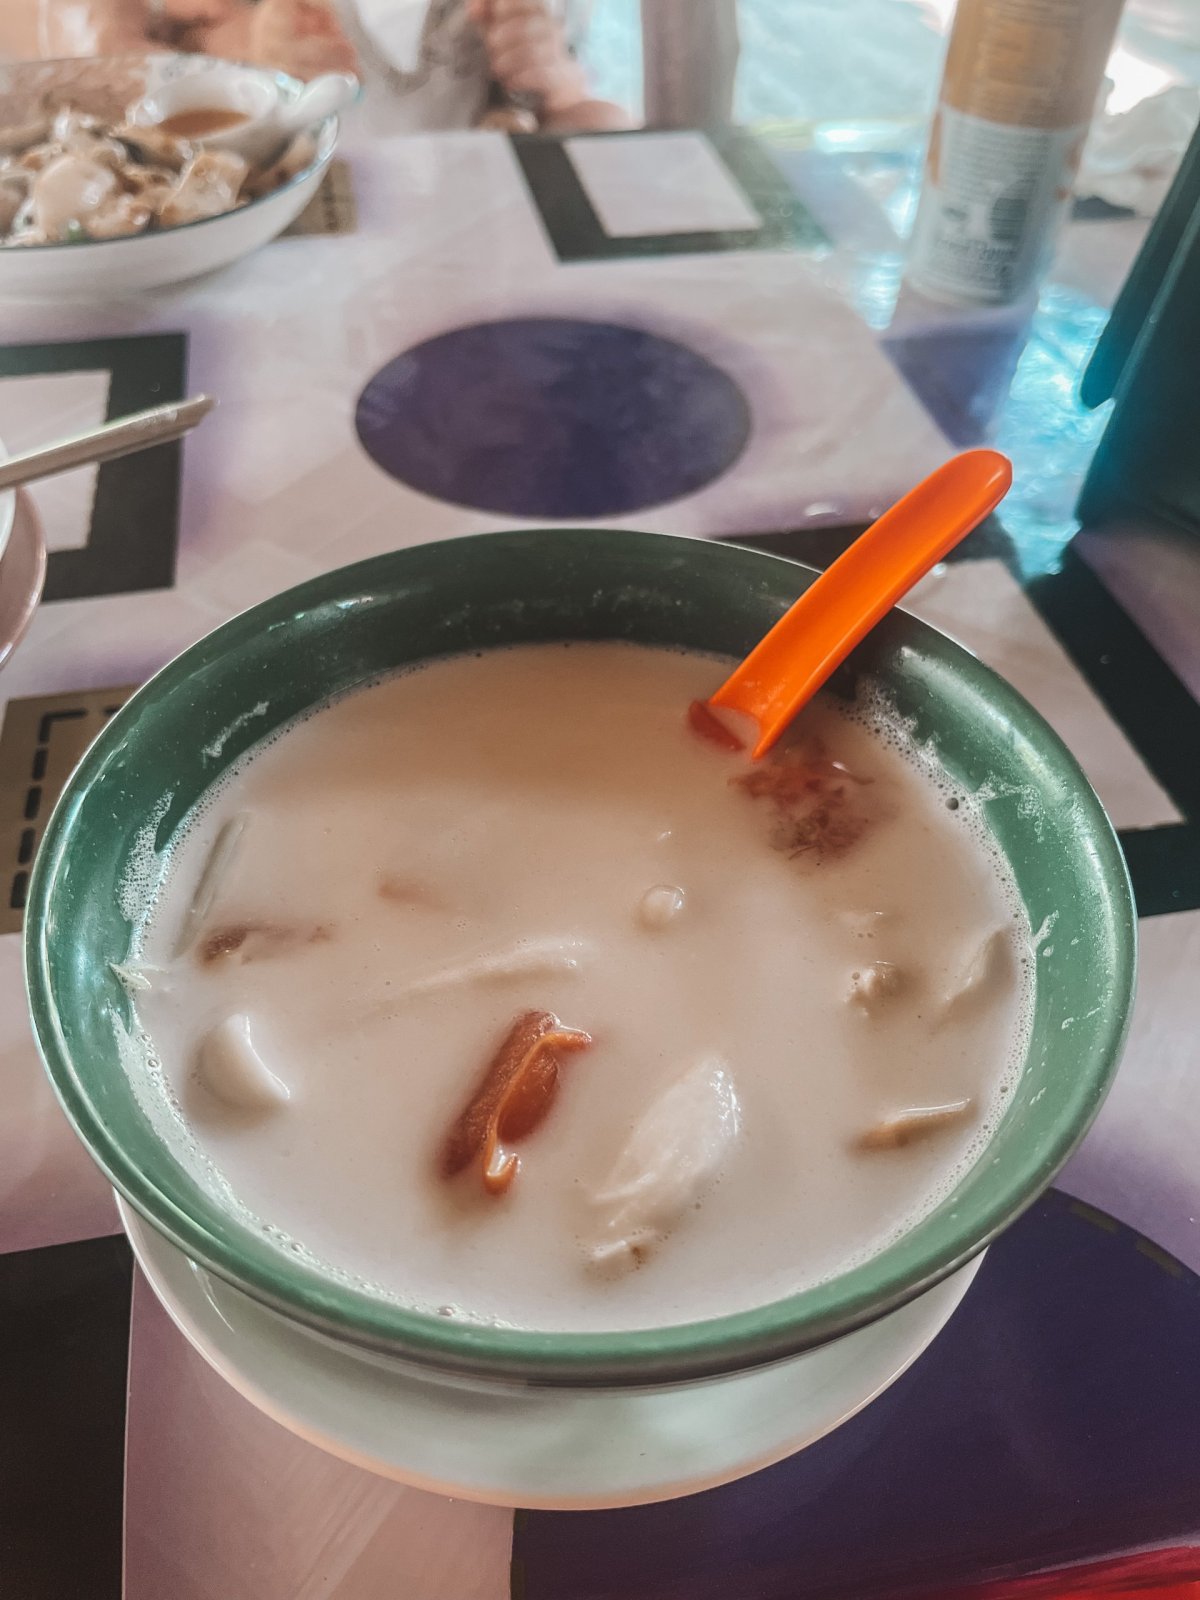 Tuhle polévku jsem si zamilovala! Tom Kha Gai - thajská kokosová ❤